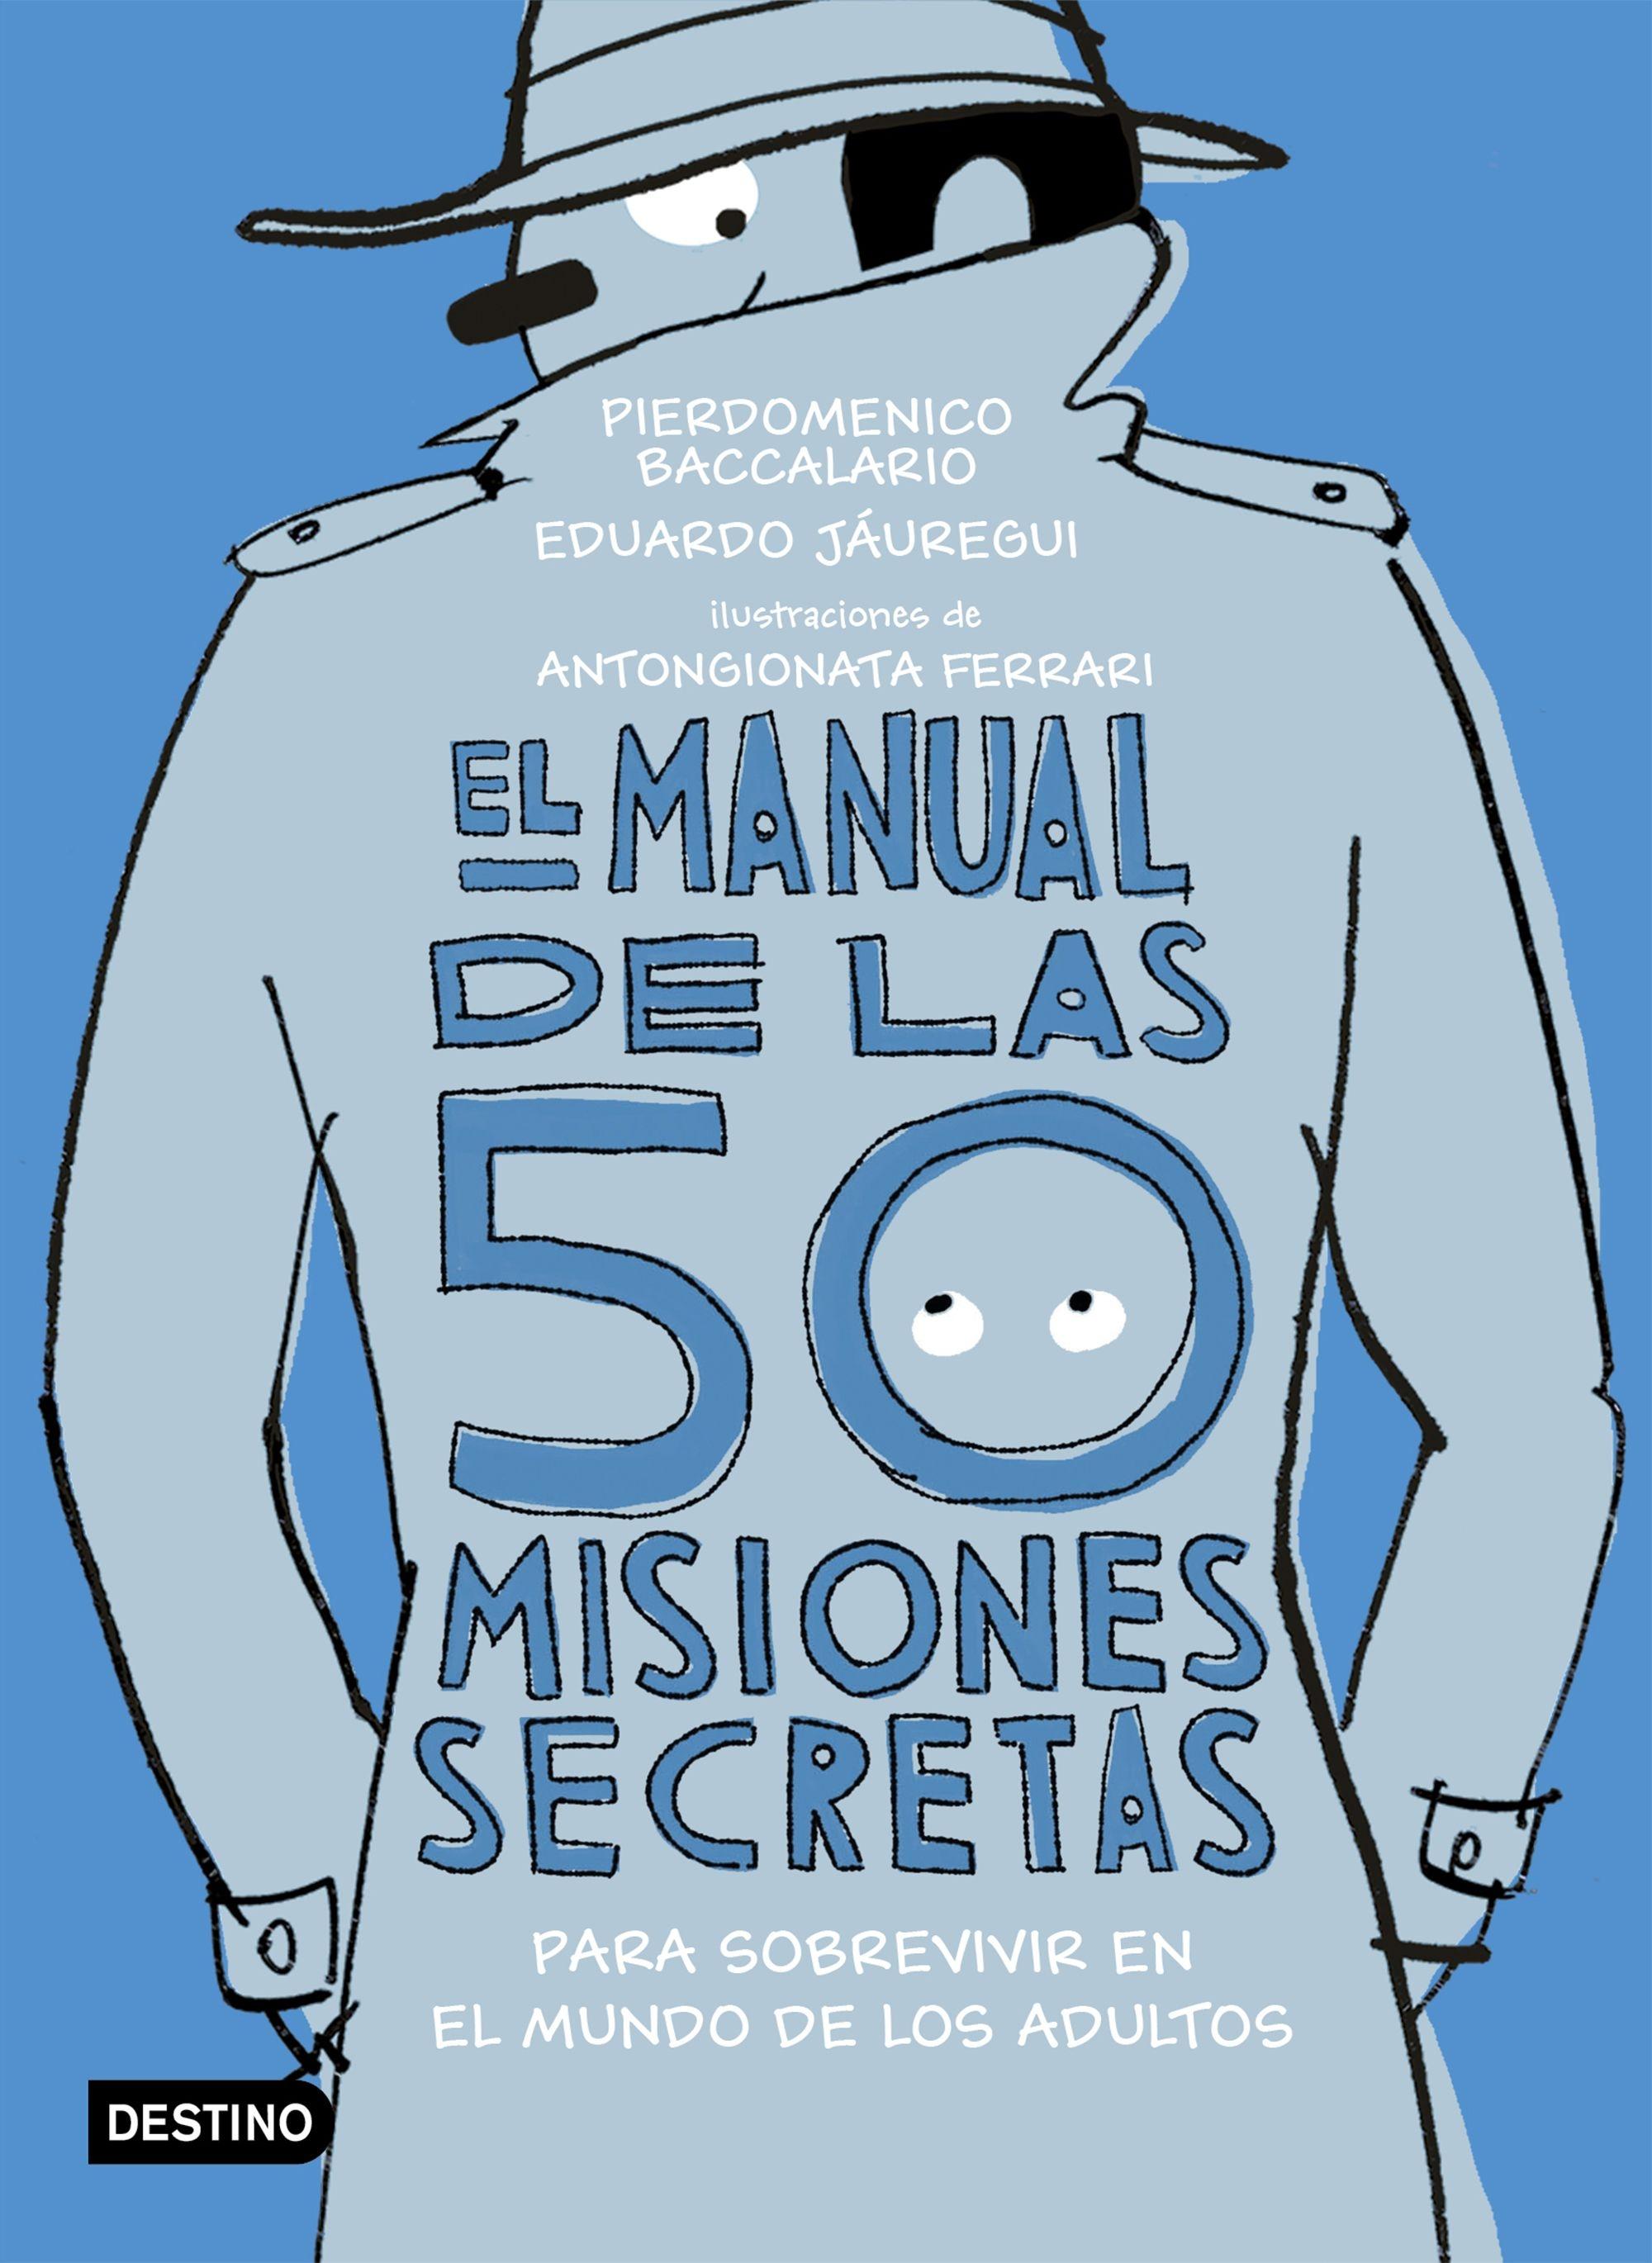 El Manual de las 50 Misiones Secretas para Sobrevivir en el Mundo de los Adultos "Ilustraciones de Antongionata Ferrari"